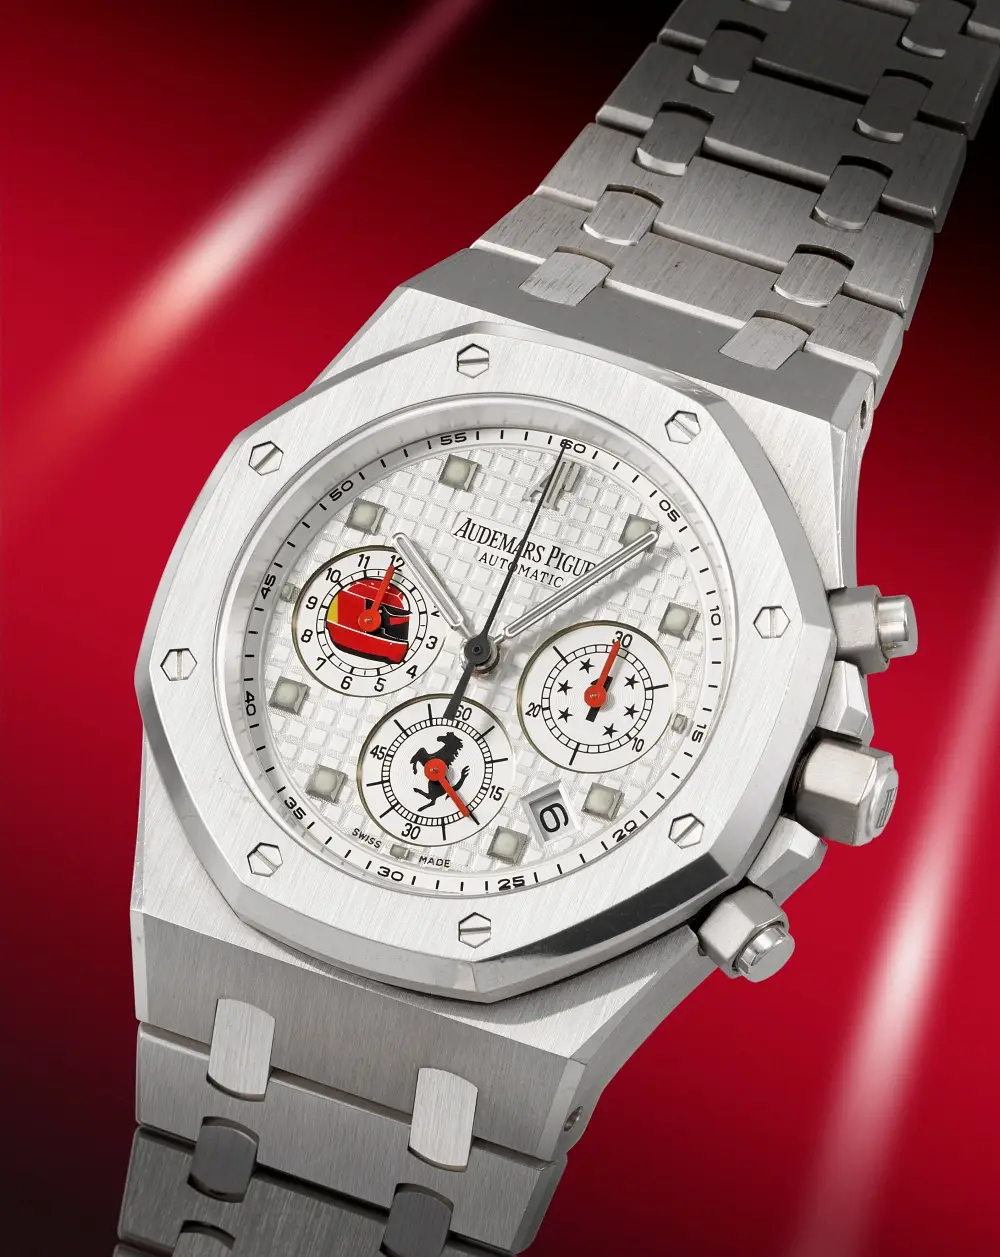 Wyniki aukcji Rare Watches: kolekcja M. Schumachera i rekordowa kwota za zegarek Patek Philippe